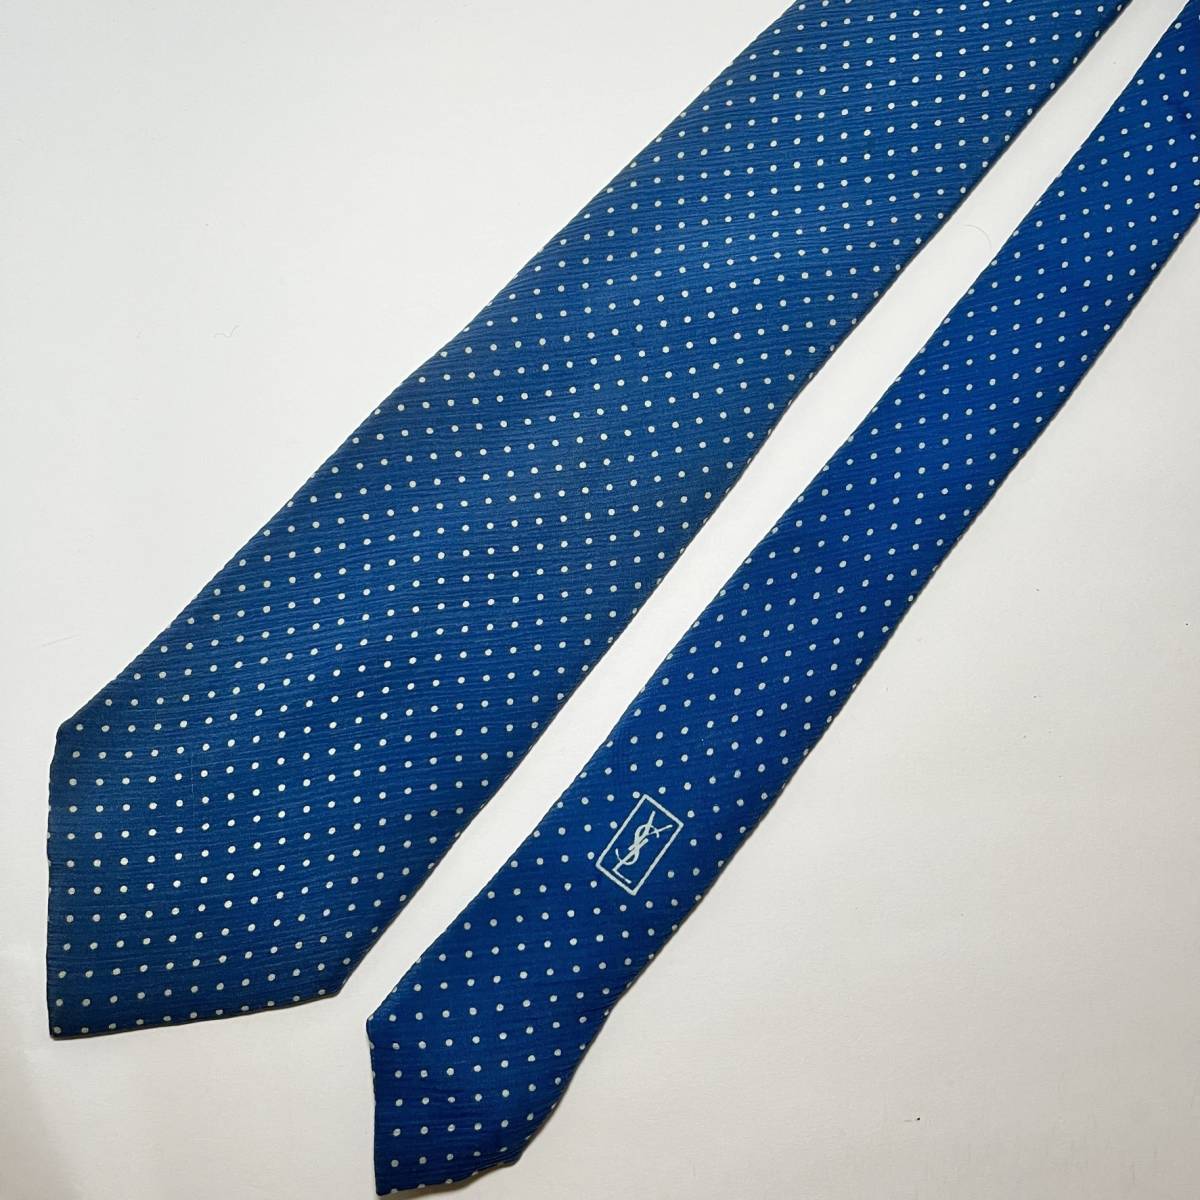  Eve солнечный rolan YVES SAINT LAURENT YSL галстук шелк голубой точка освежение высокий бренд постоянный синий шелк 